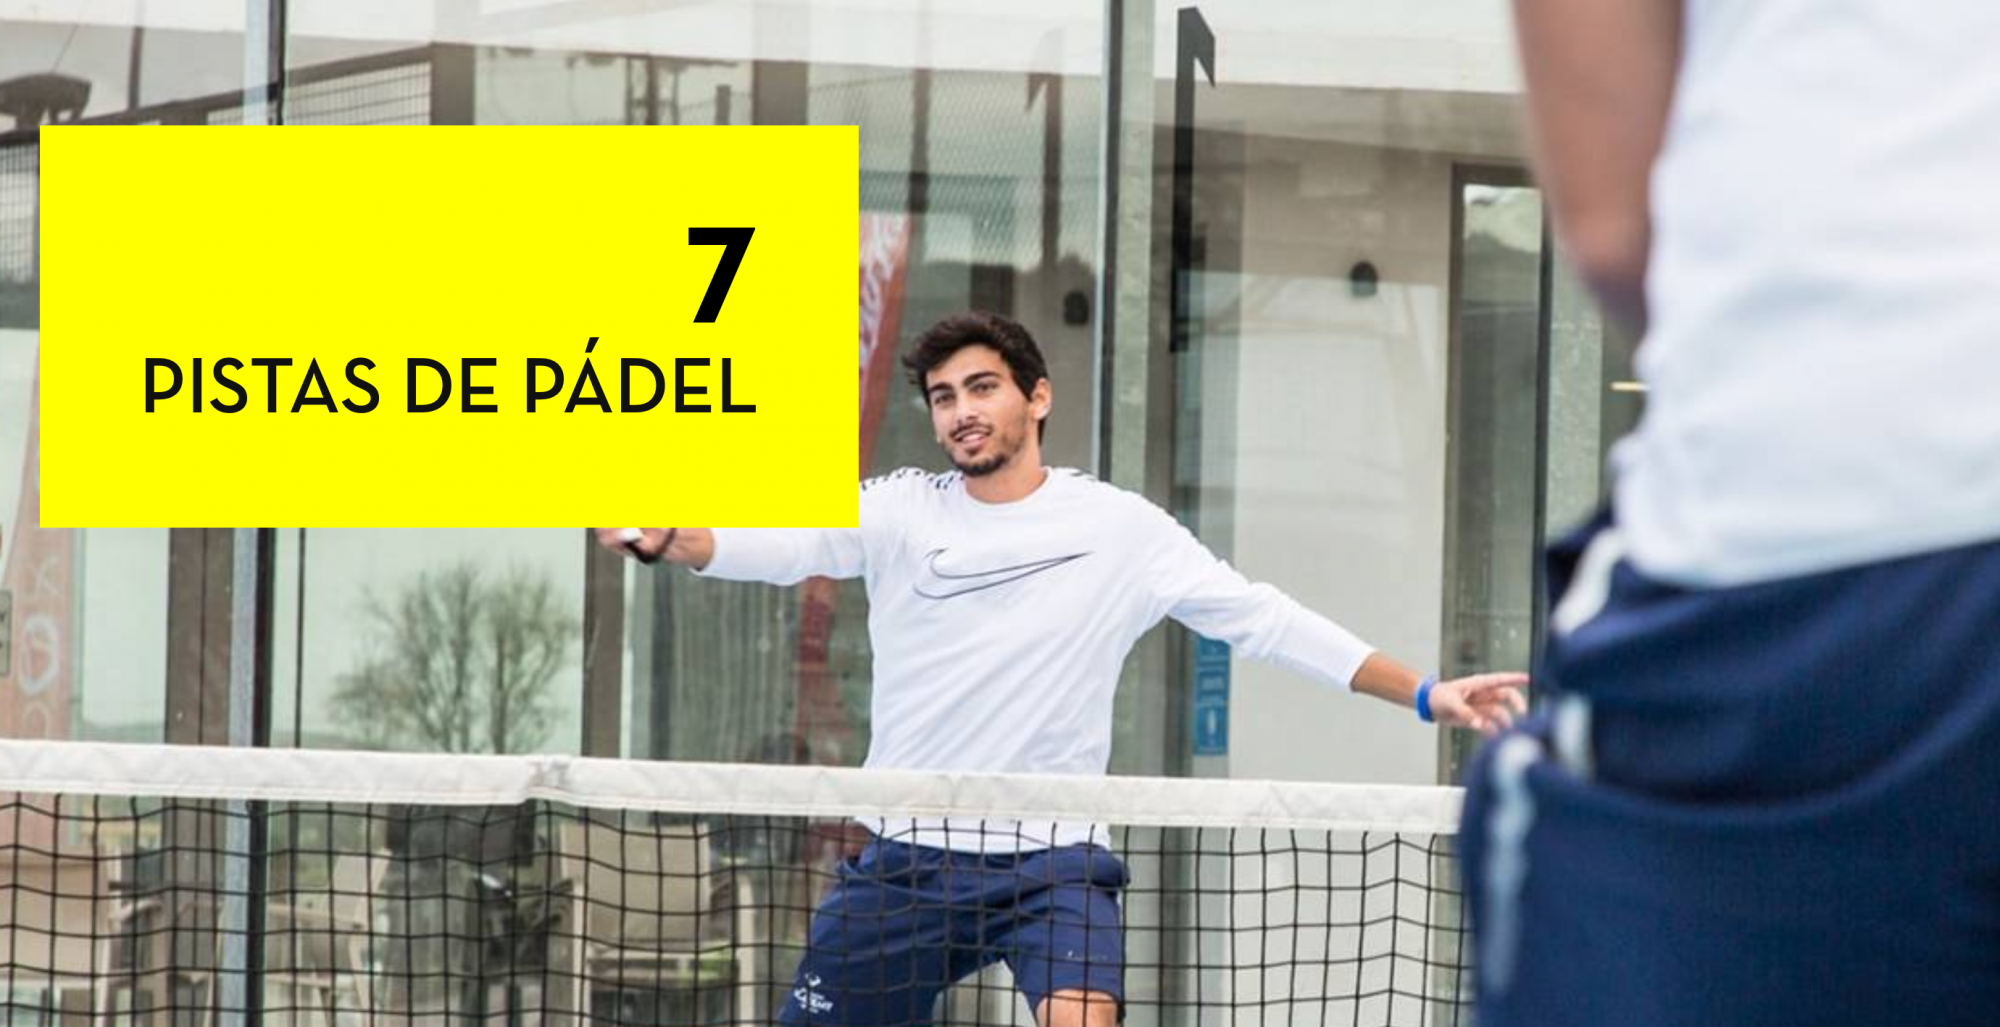 Rafa Nadal Academy, sono 7 campi di padel !